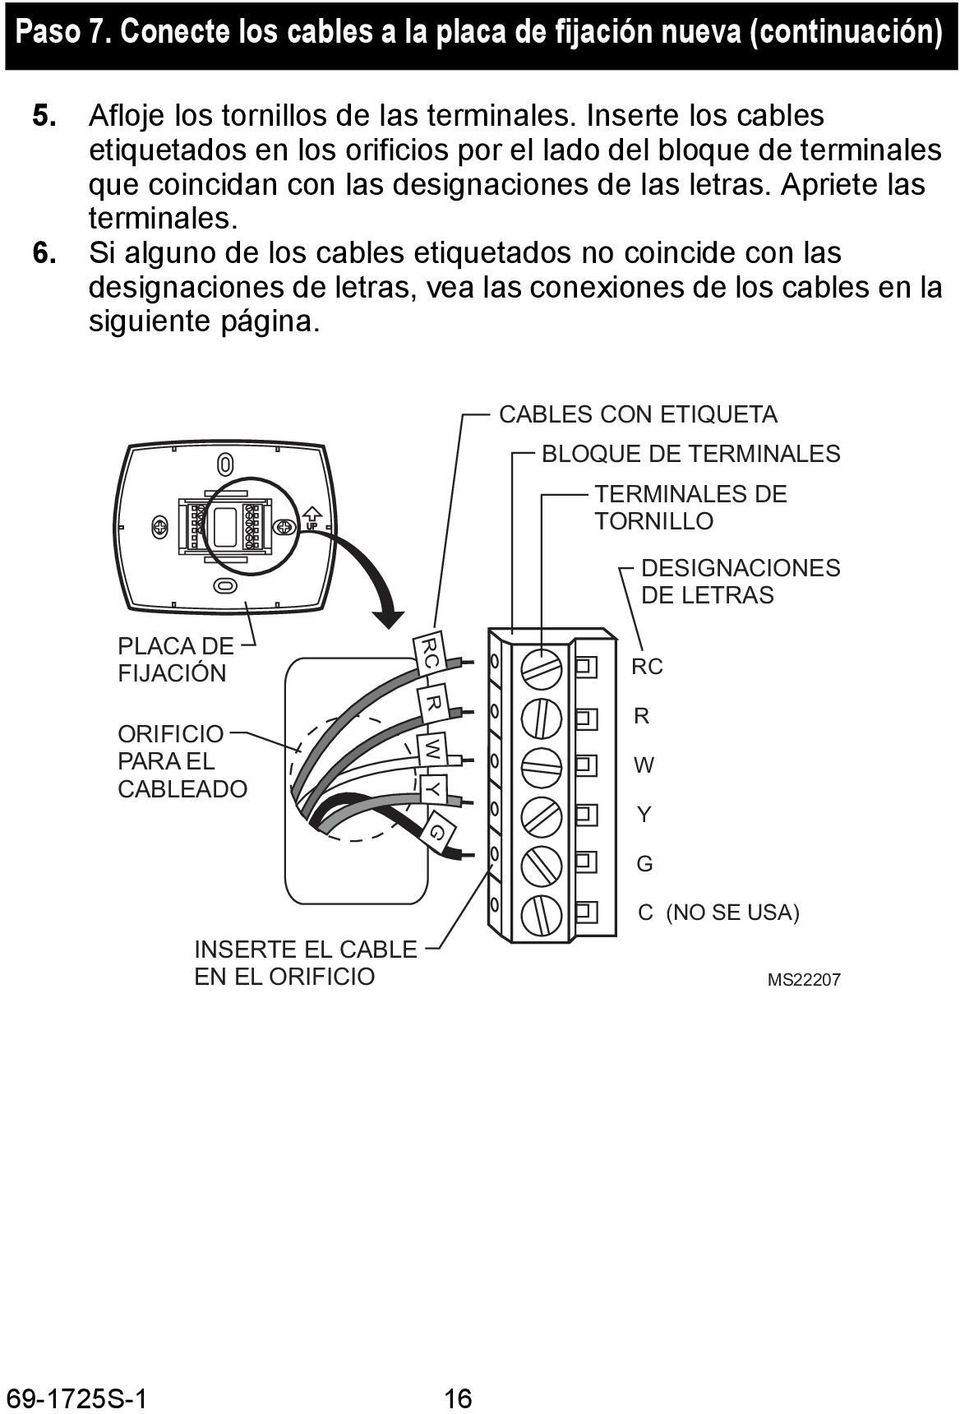 6. Si alguno de los cables etiquetados no coincide con las designaciones de letras, vea las conexiones de los cables en la siguiente página.